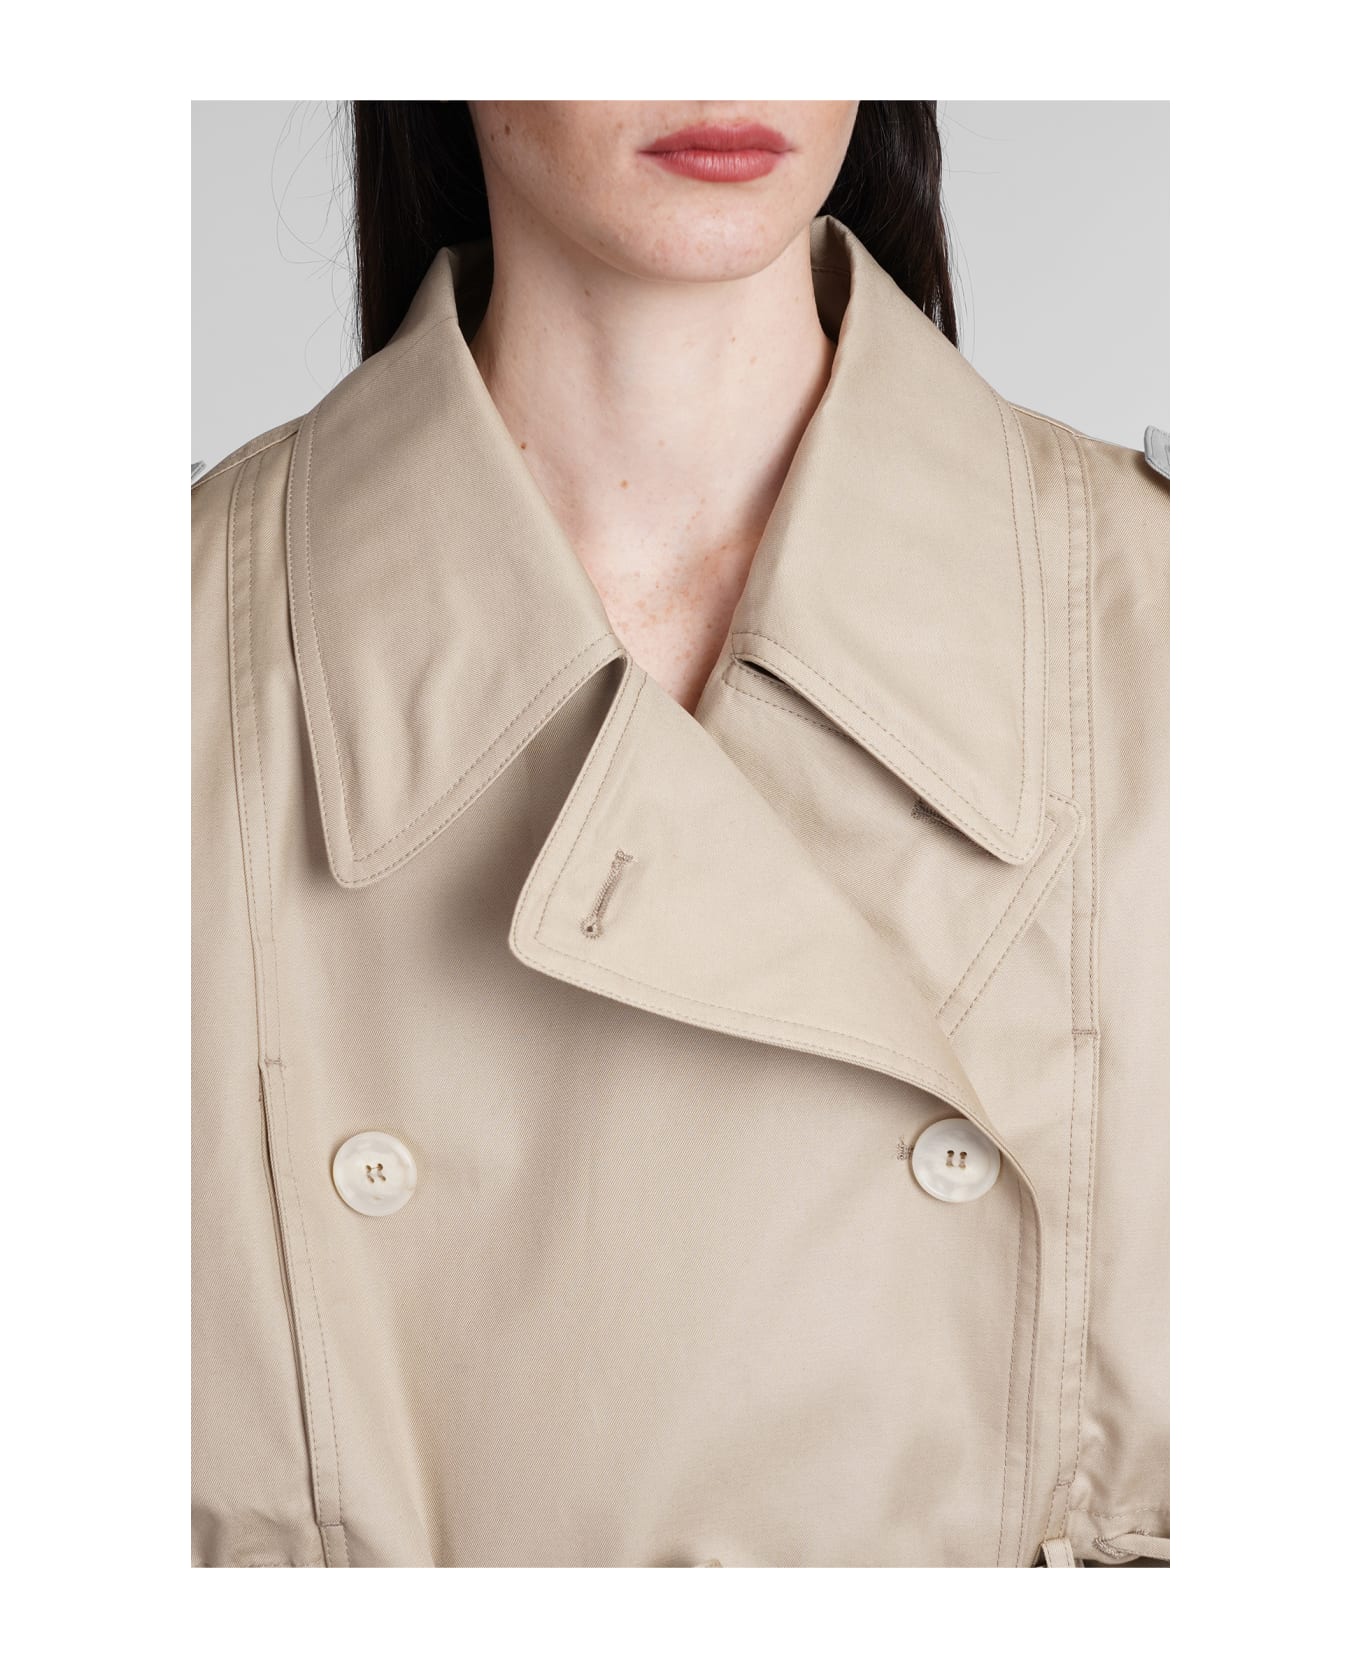 DARKPARK Penelope Casual Jacket In Beige Cotton - beige